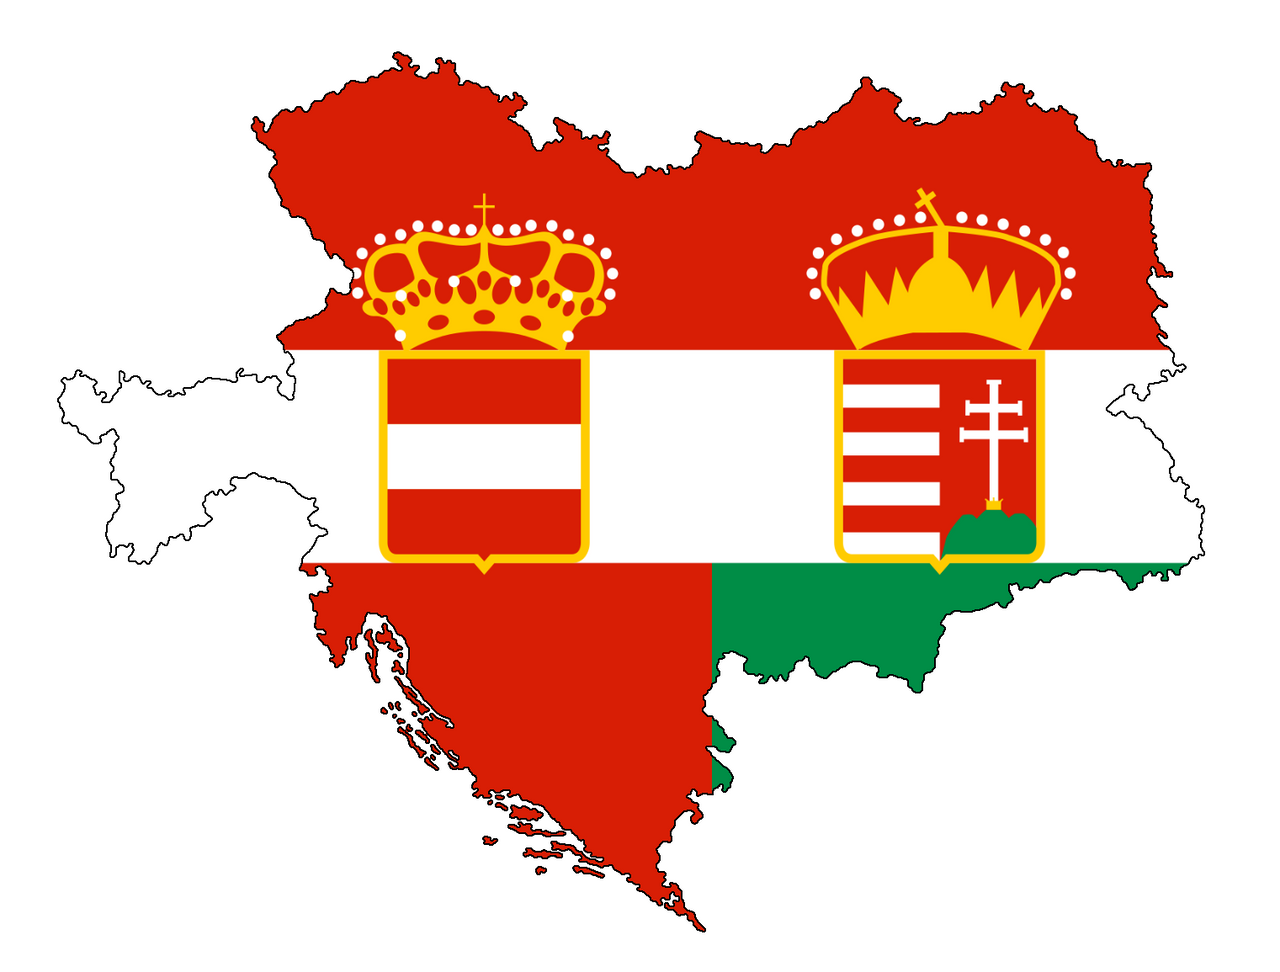 Flag Map Of Austria Hungary By Coconutmaps Daheu2h Fullview ?token=eyJ0eXAiOiJKV1QiLCJhbGciOiJIUzI1NiJ9.eyJzdWIiOiJ1cm46YXBwOjdlMGQxODg5ODIyNjQzNzNhNWYwZDQxNWVhMGQyNmUwIiwiaXNzIjoidXJuOmFwcDo3ZTBkMTg4OTgyMjY0MzczYTVmMGQ0MTVlYTBkMjZlMCIsIm9iaiI6W1t7ImhlaWdodCI6Ijw9OTcyIiwicGF0aCI6IlwvZlwvZTFlNTdmNWEtMmZhOC00YmVlLWJlMzEtMDcxZDU3ZjljZGUyXC9kYWhldTJoLWI4ODMzYzQzLTI0MTItNDUwZC1hNDgzLWQ2NDliNDkzZjhjOC5wbmciLCJ3aWR0aCI6Ijw9MTI4MCJ9XV0sImF1ZCI6WyJ1cm46c2VydmljZTppbWFnZS5vcGVyYXRpb25zIl19.n0V83jjA1fyDaxaBUs6juxFxmPcLwkcV7fouf6PuLYo